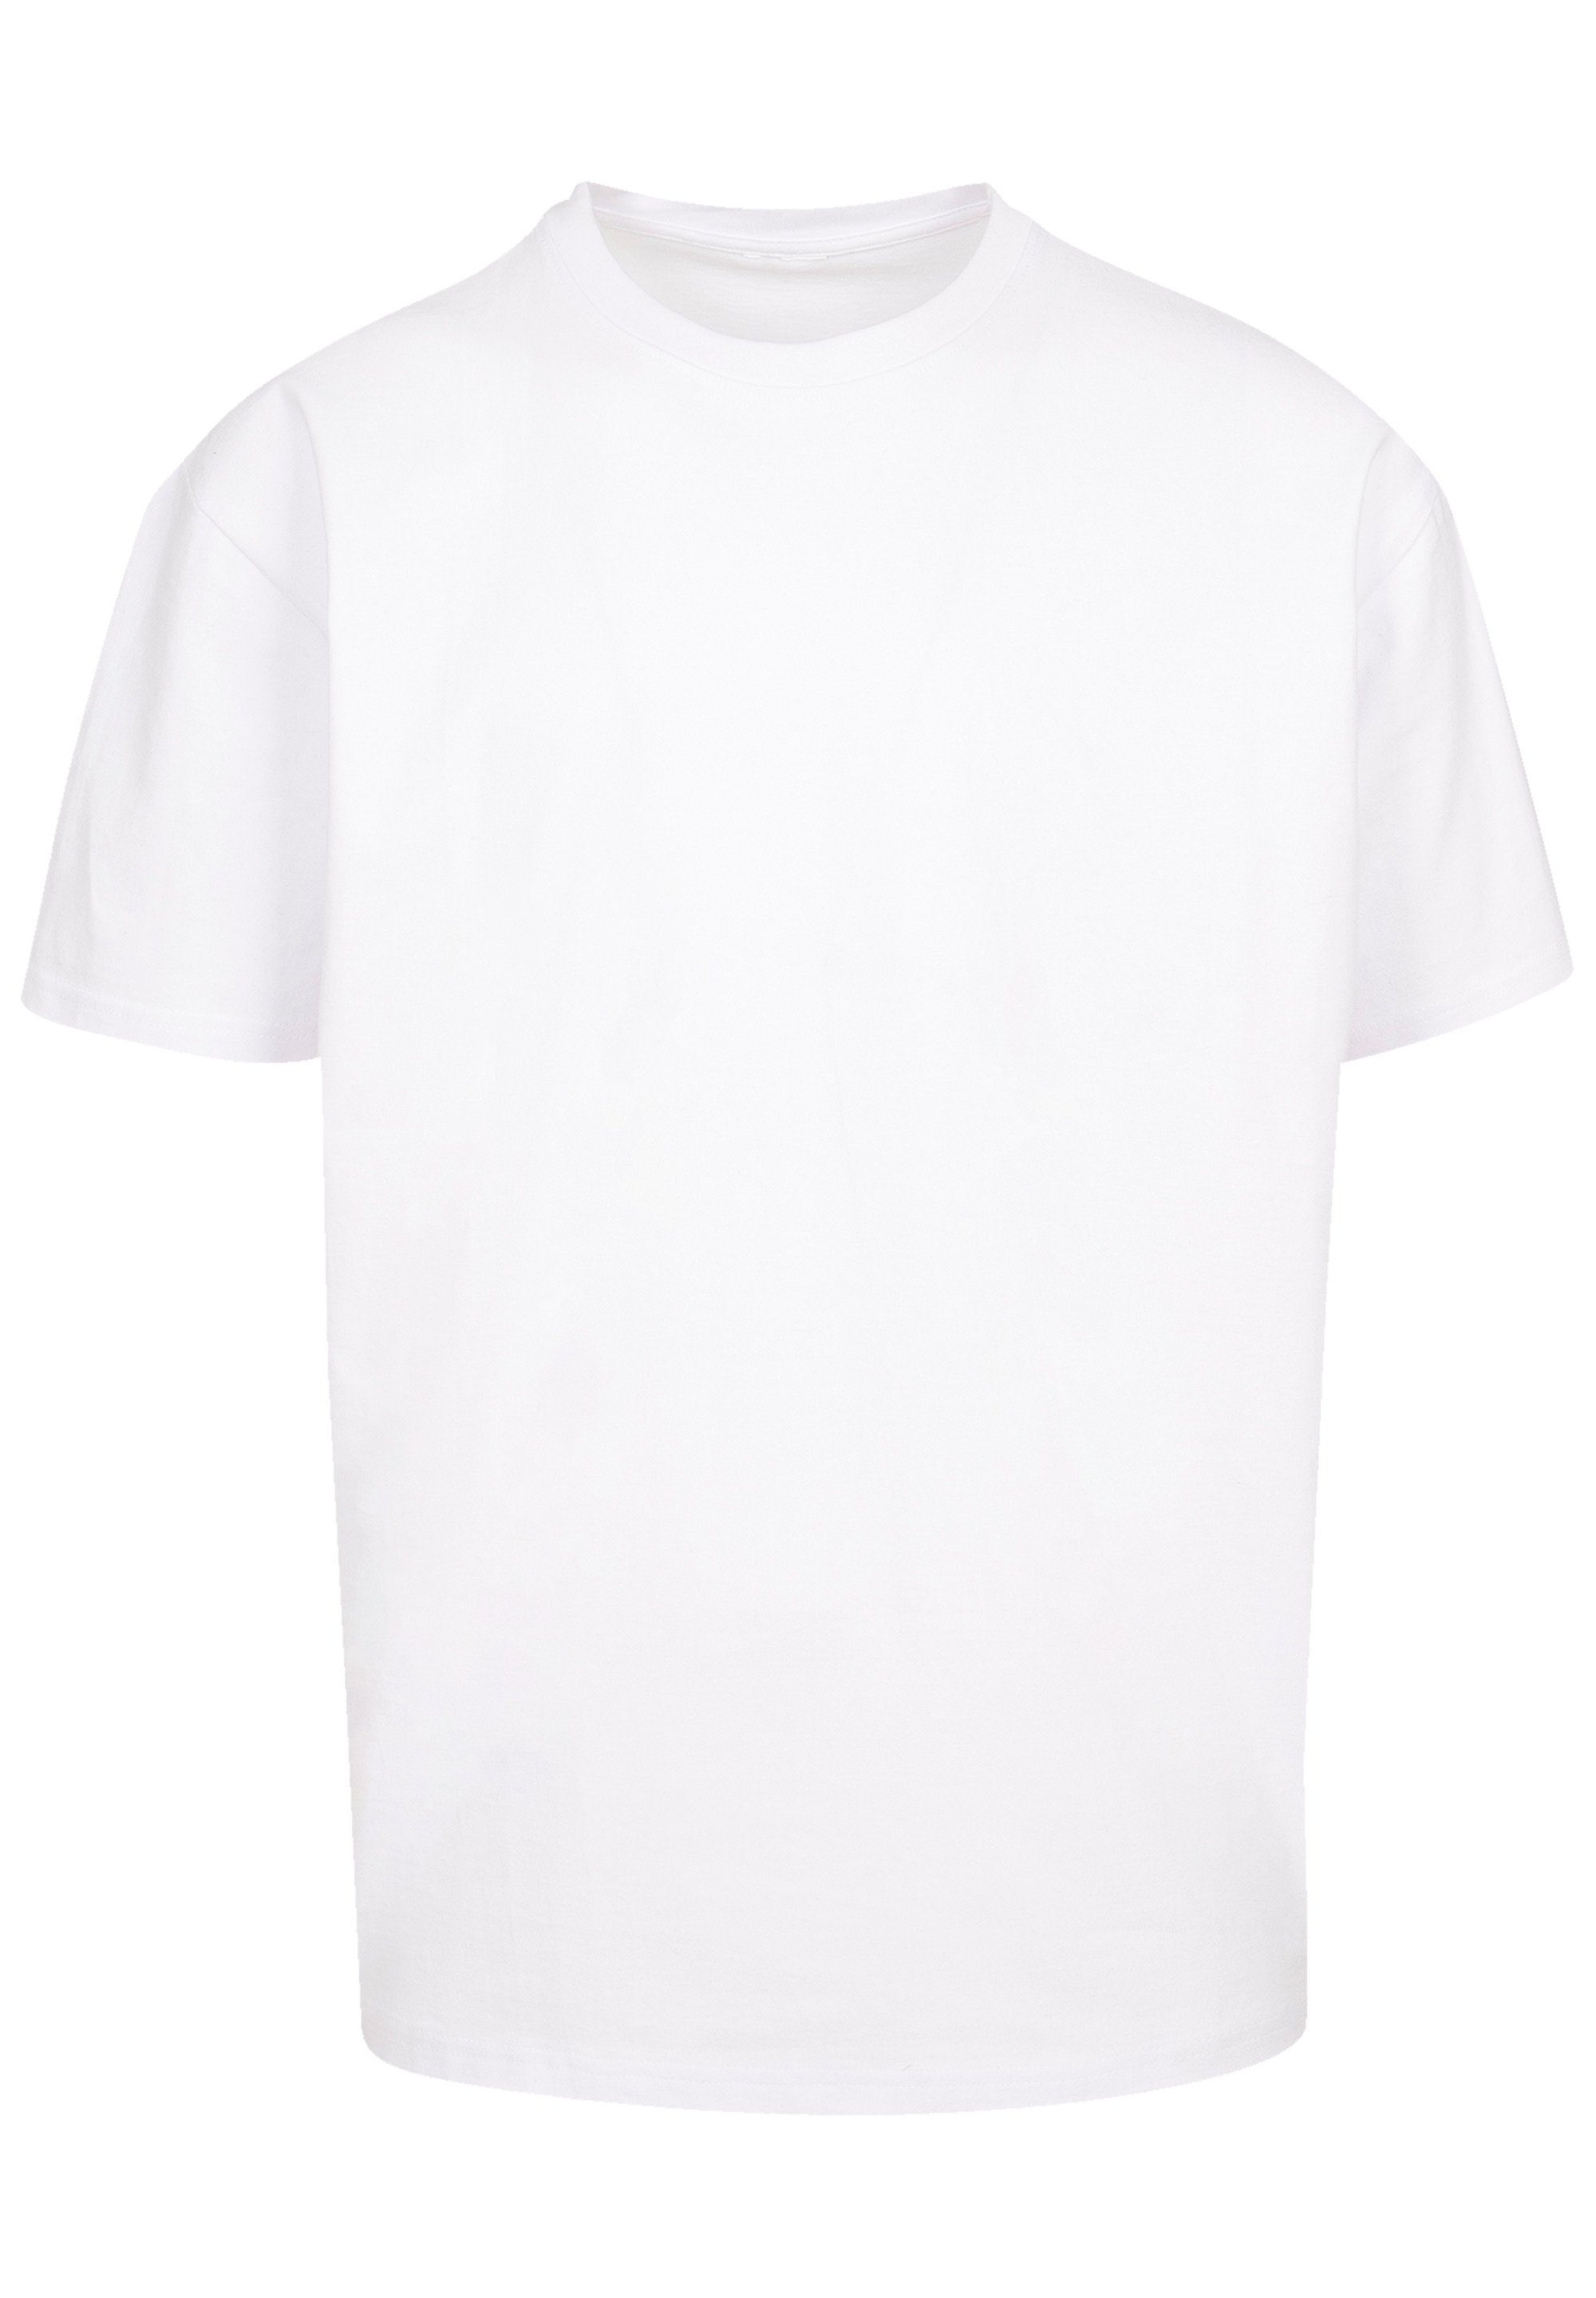 Schultern T-Shirt Yoga Weite Halloween Skelett überschnittene F4NT4STIC Print, Namaste Passform und